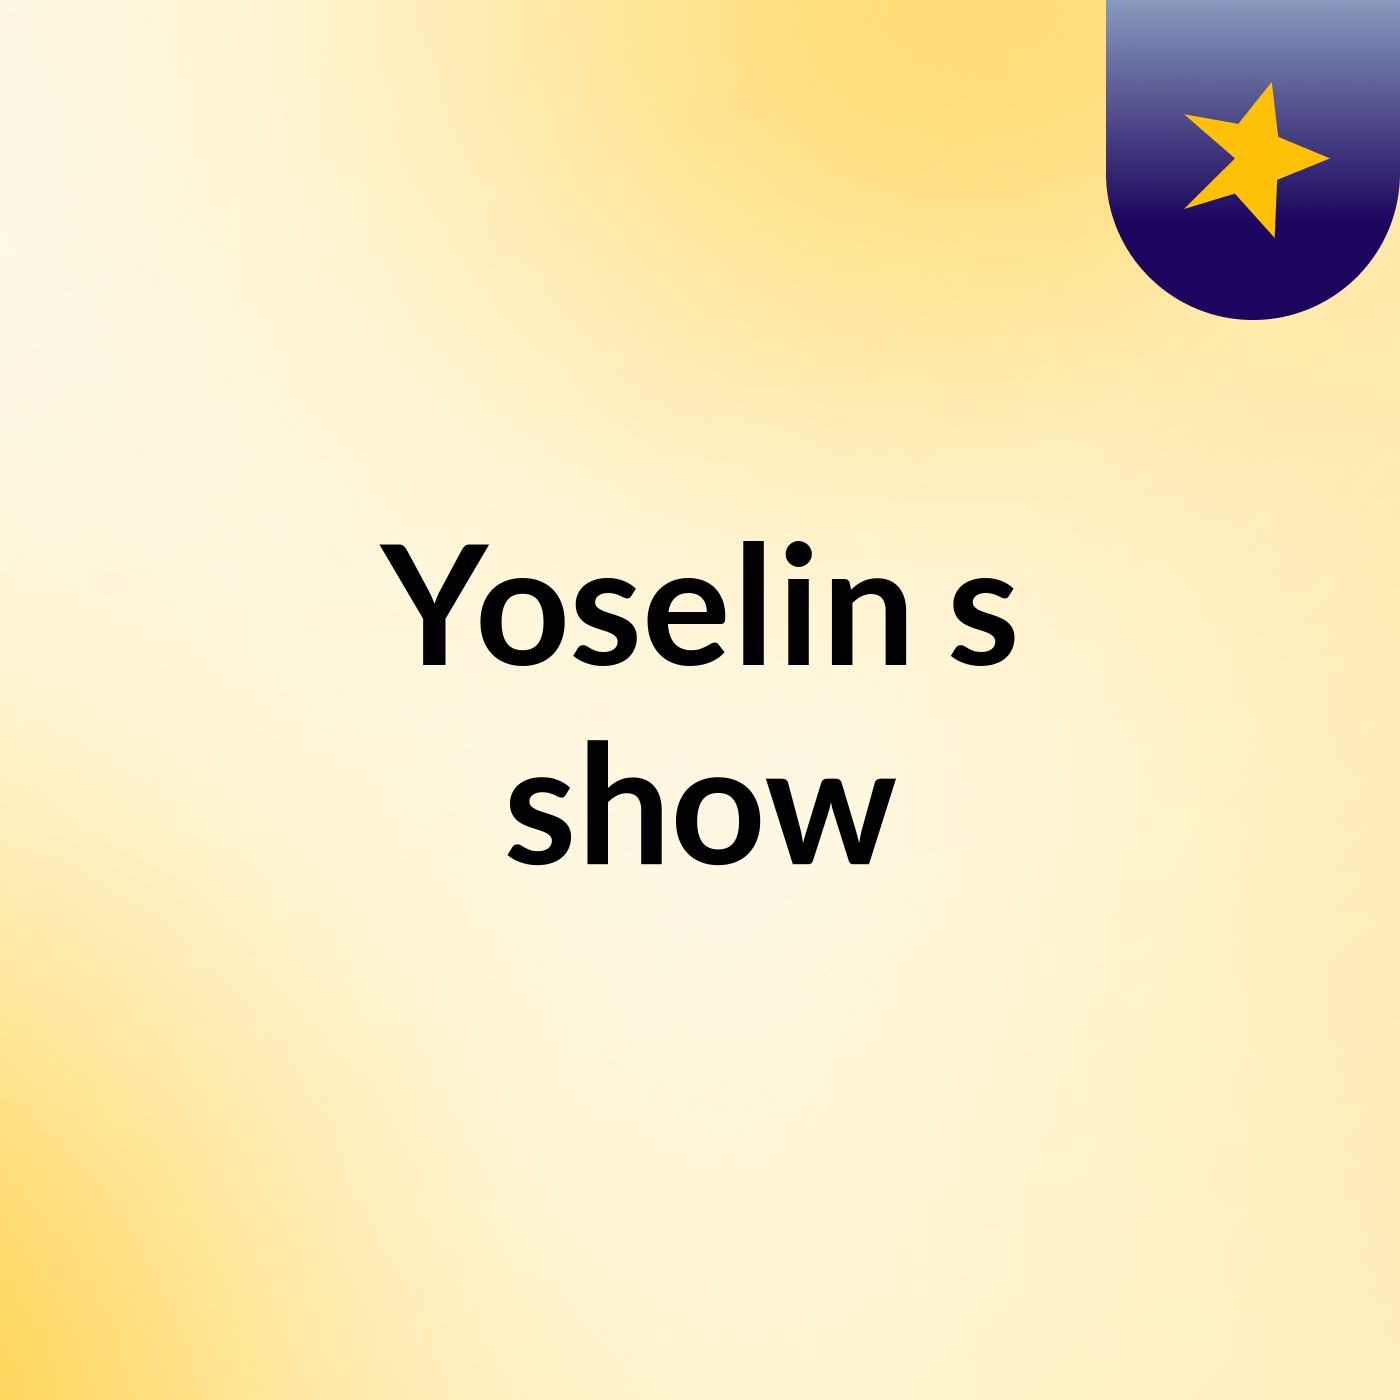 Yoselin's show